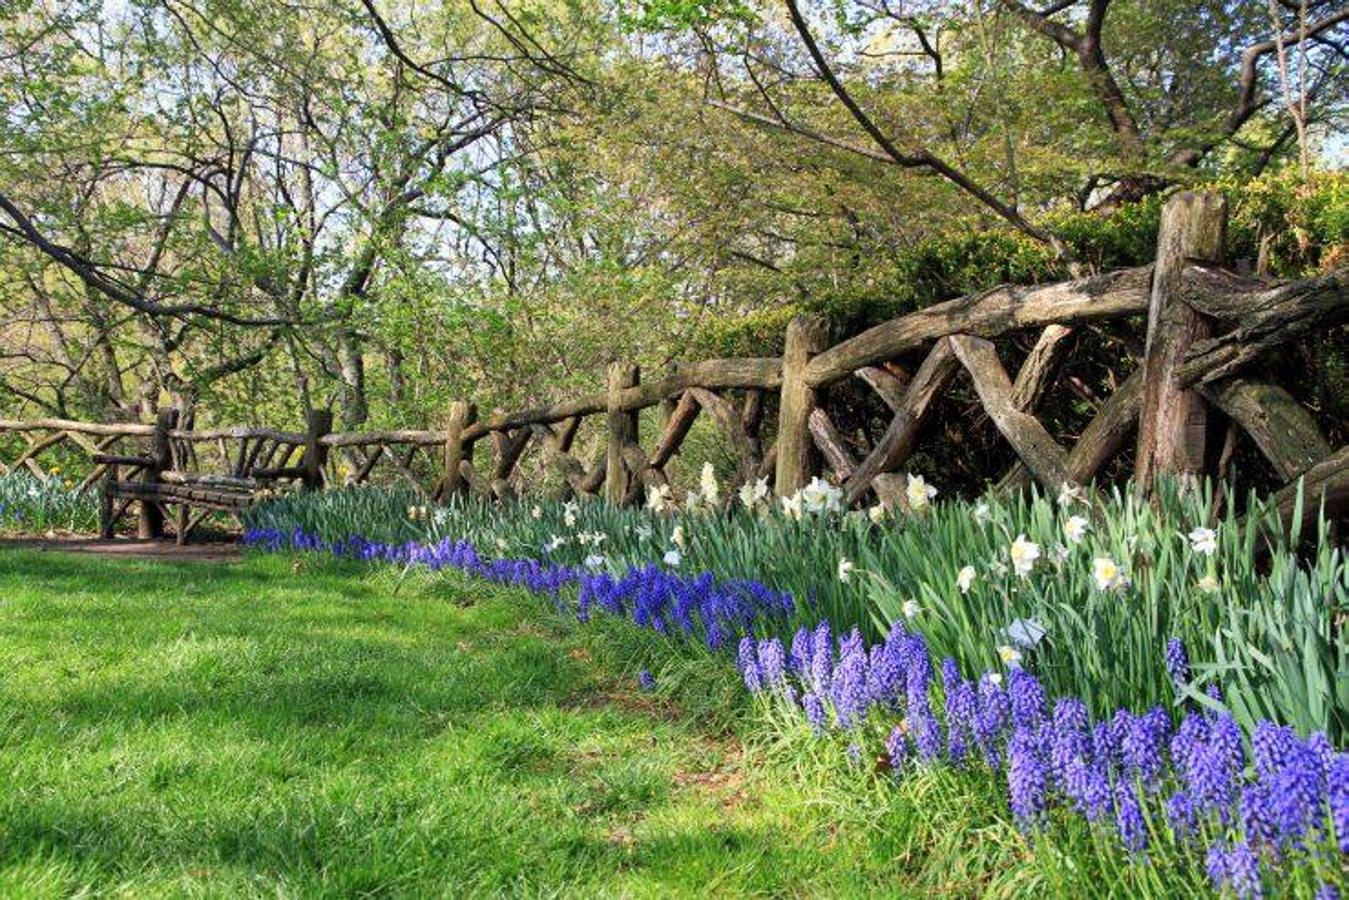 Además, recorriendo el parque puedes dar con el 'jardín de Shakespeare', una preciosa zona donde encontrar las flores y plantas mencionadas en la obra del escritor y que es popular por su vibrante ambiente romántico.